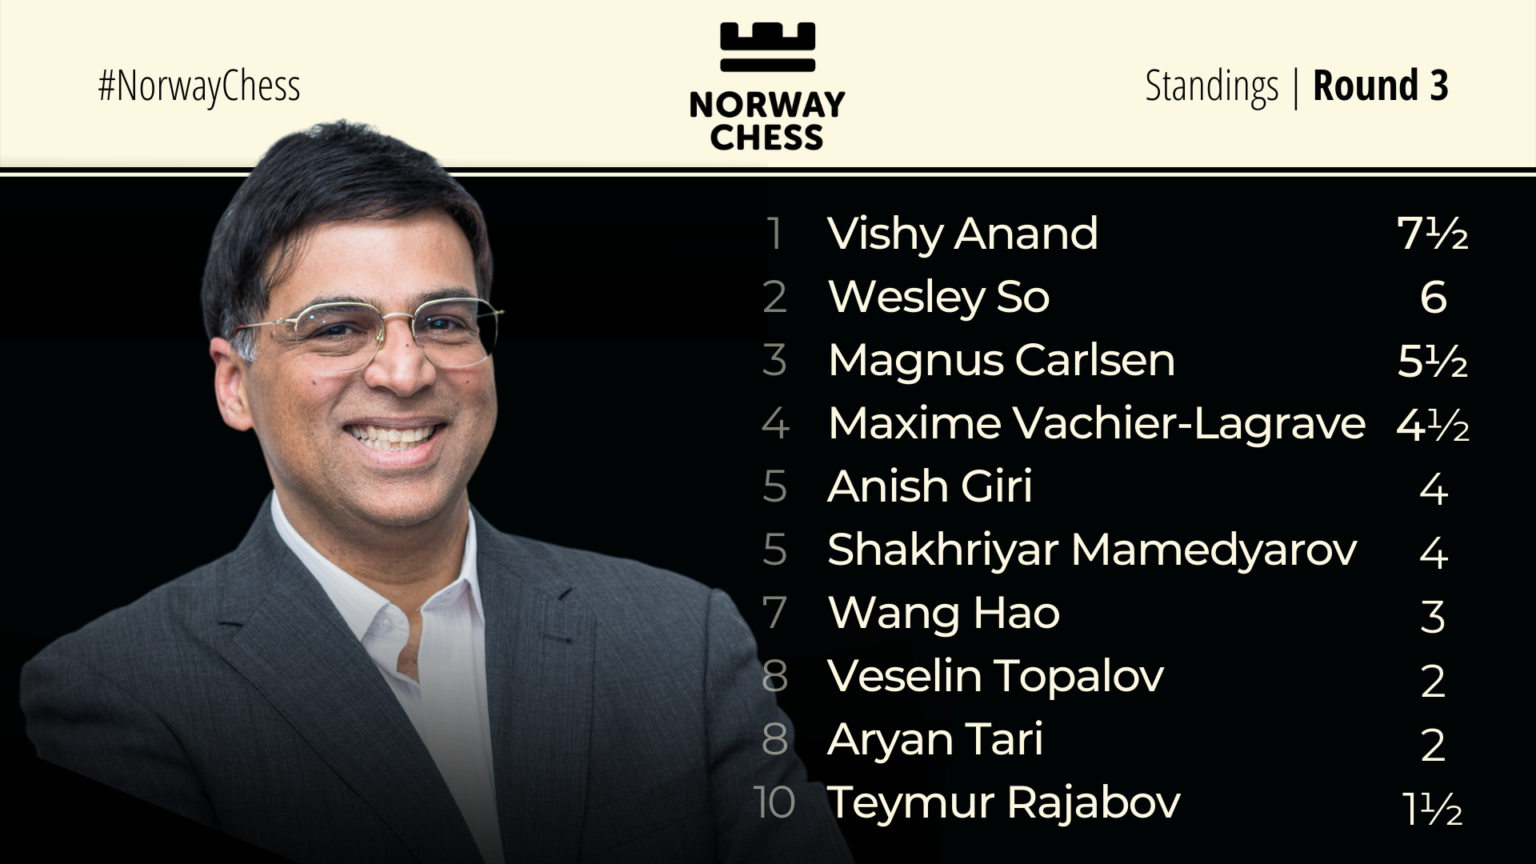 Norway Chess Standings Round 3